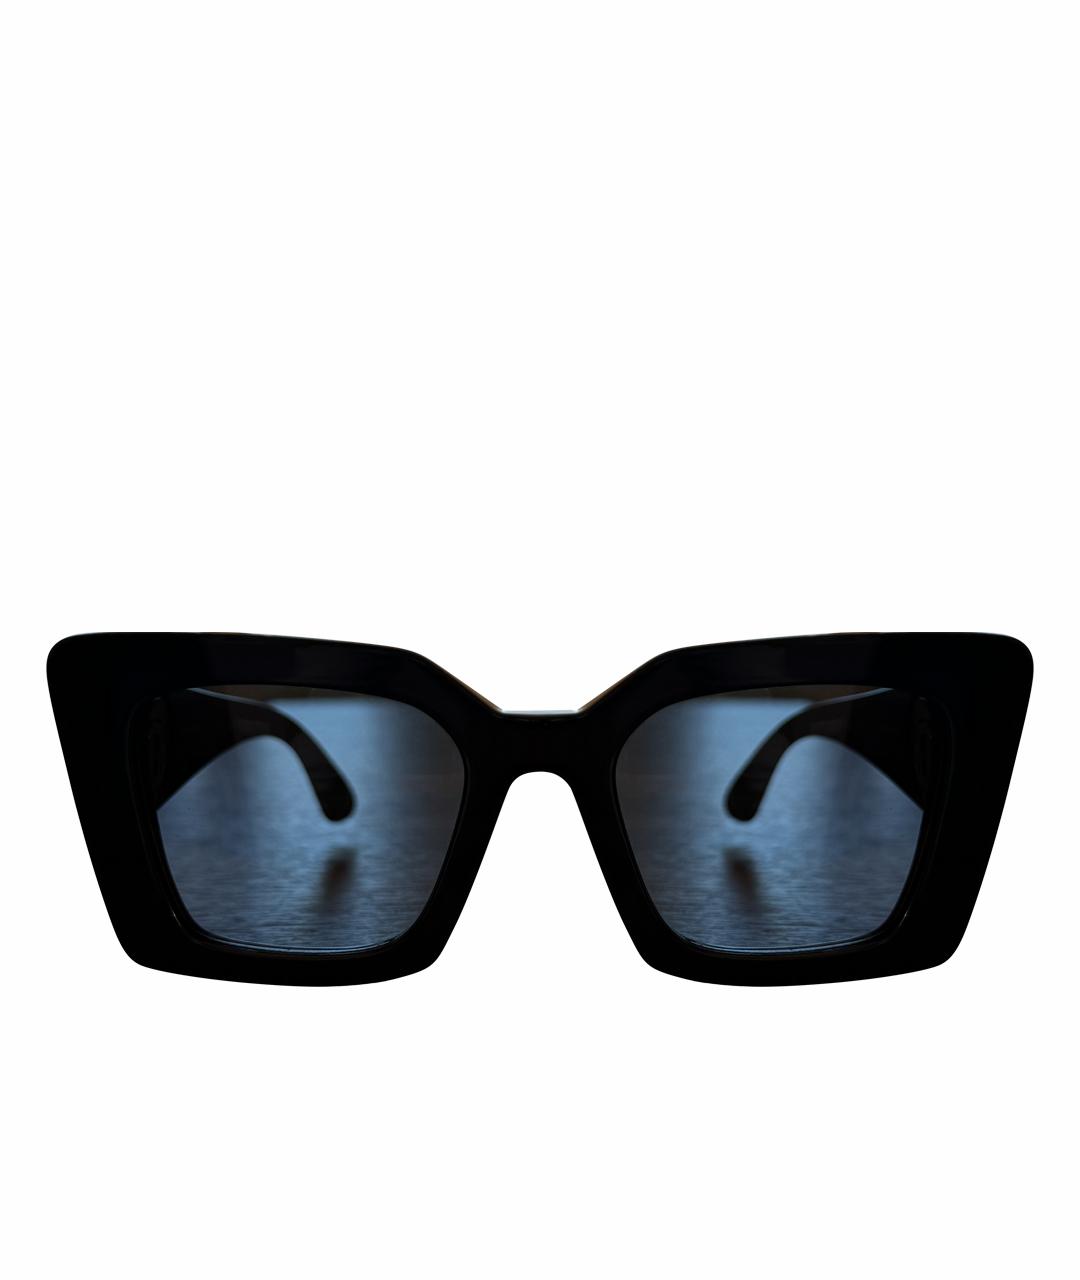 BURBERRY Черные пластиковые солнцезащитные очки, фото 1